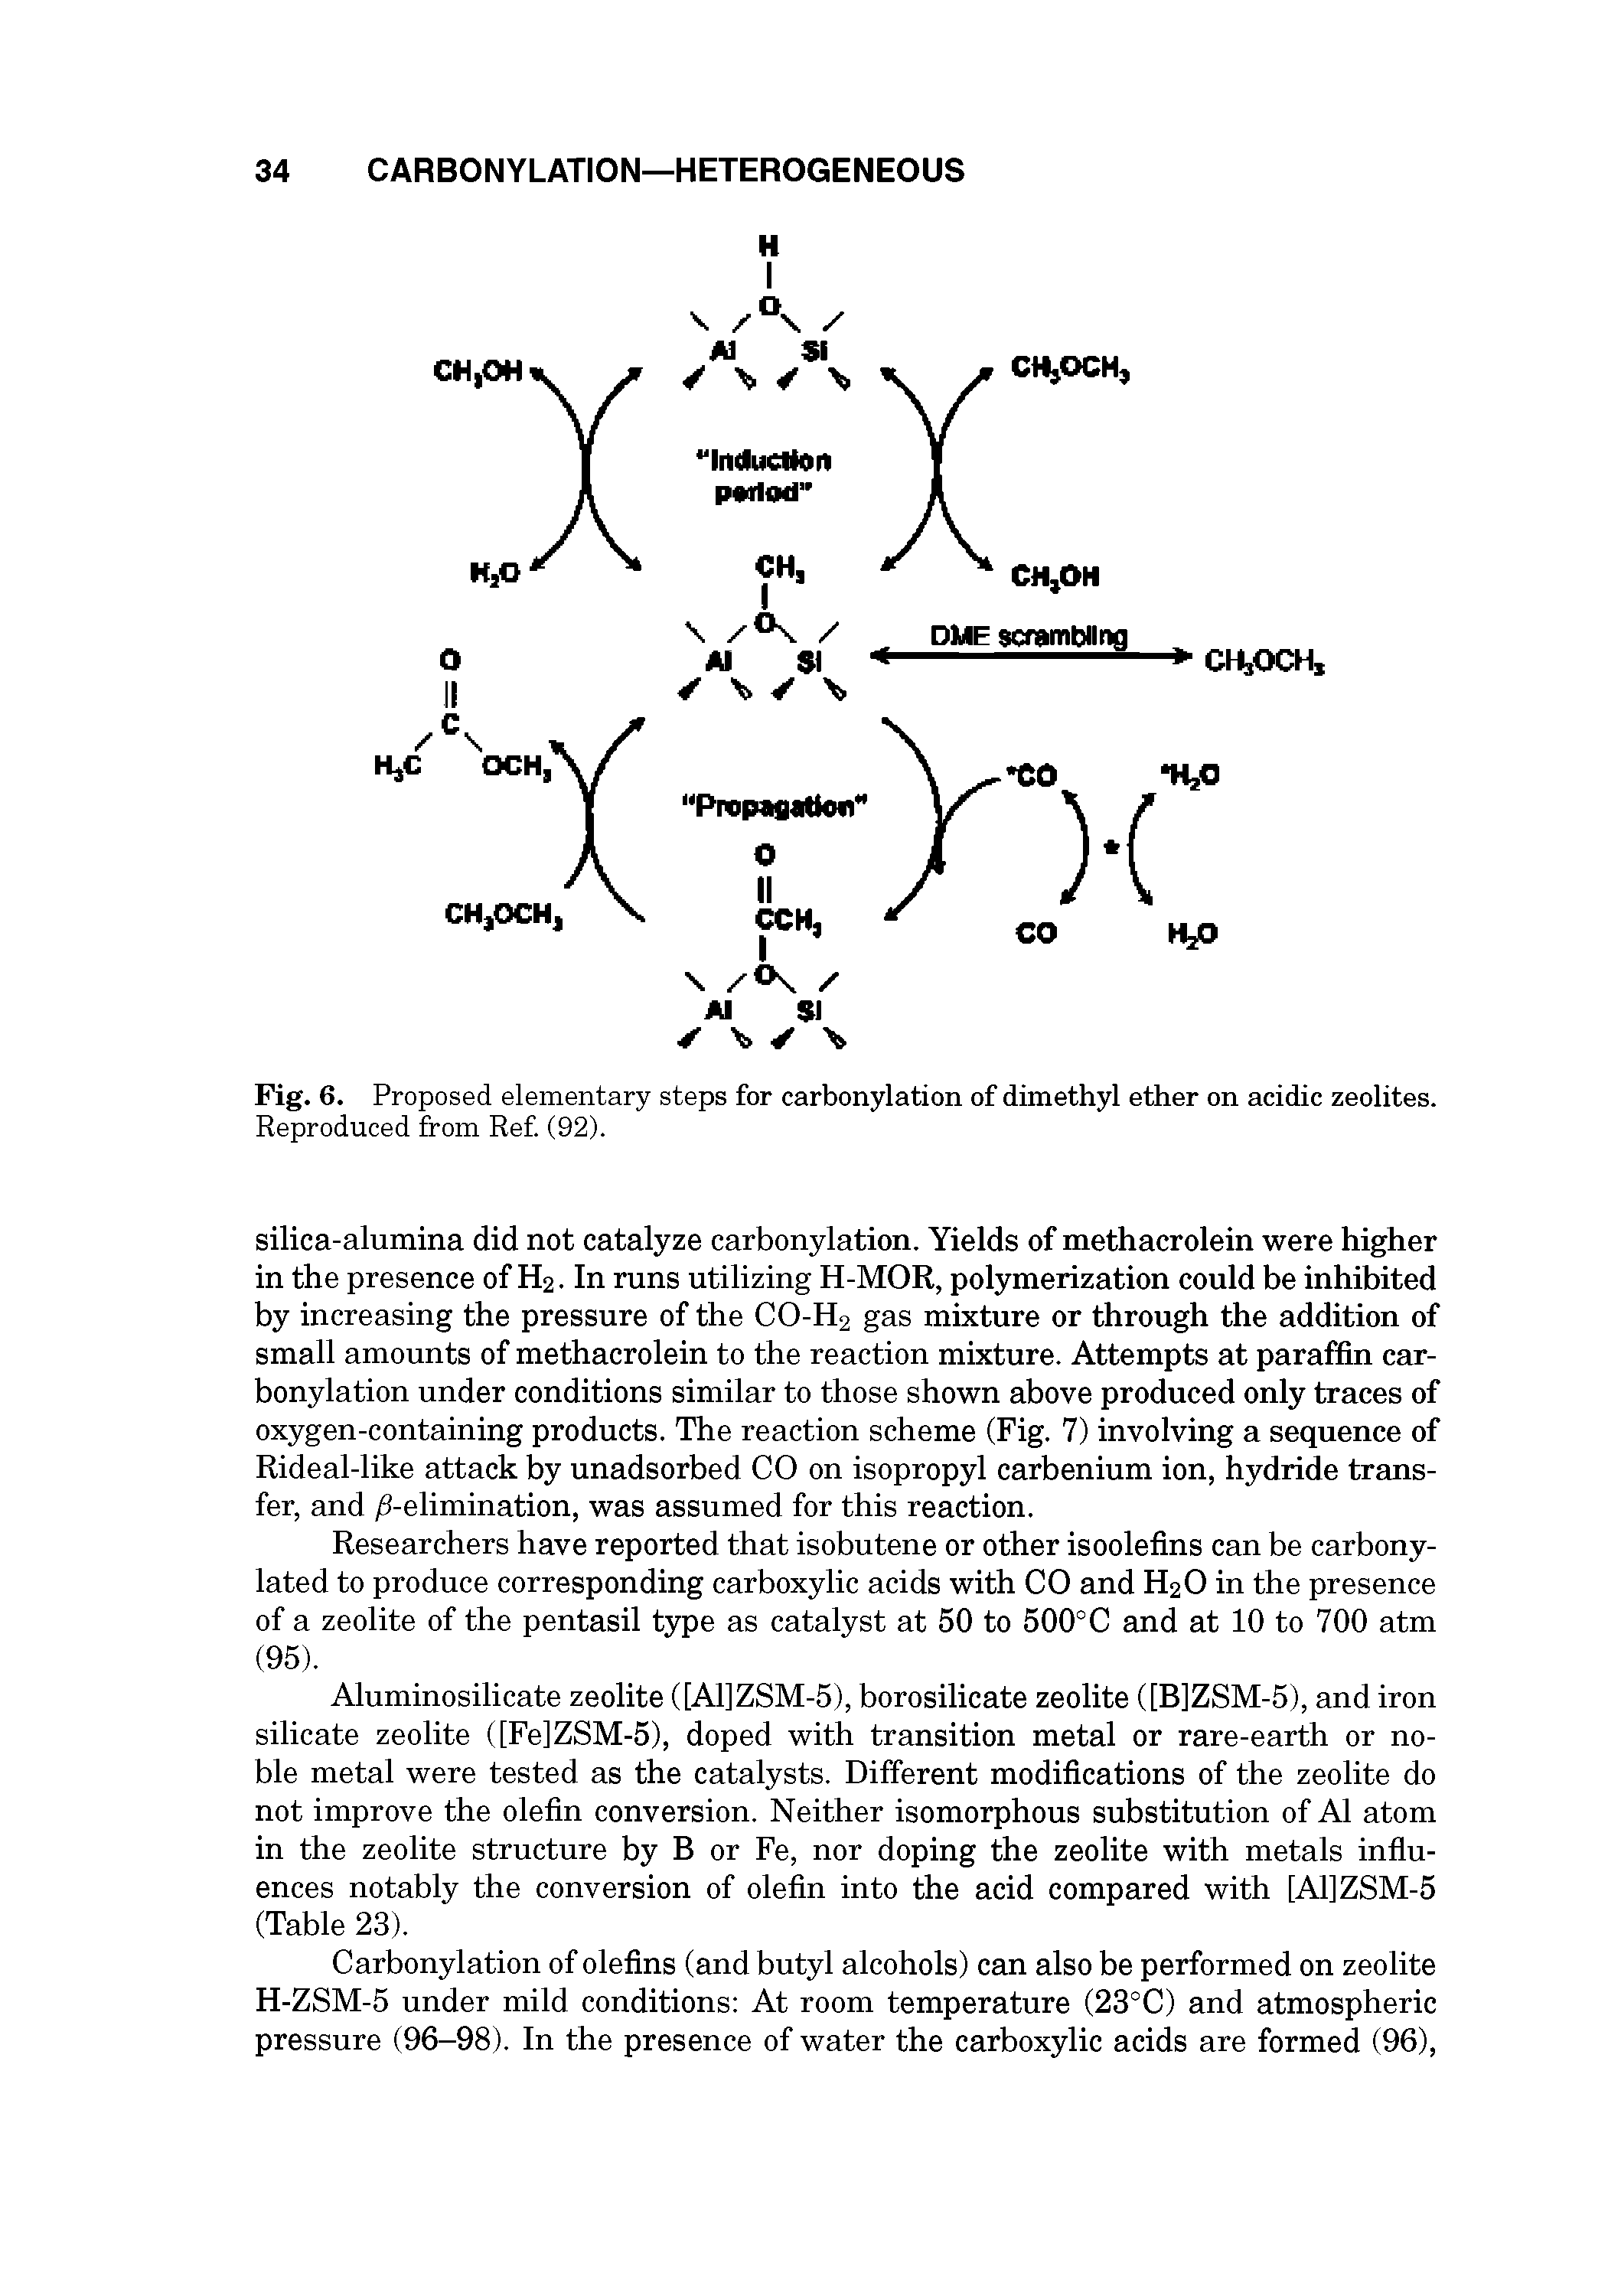 Fig. 6. Proposed elementary steps for carbonylation of dimethyl ether on acidic zeolites.